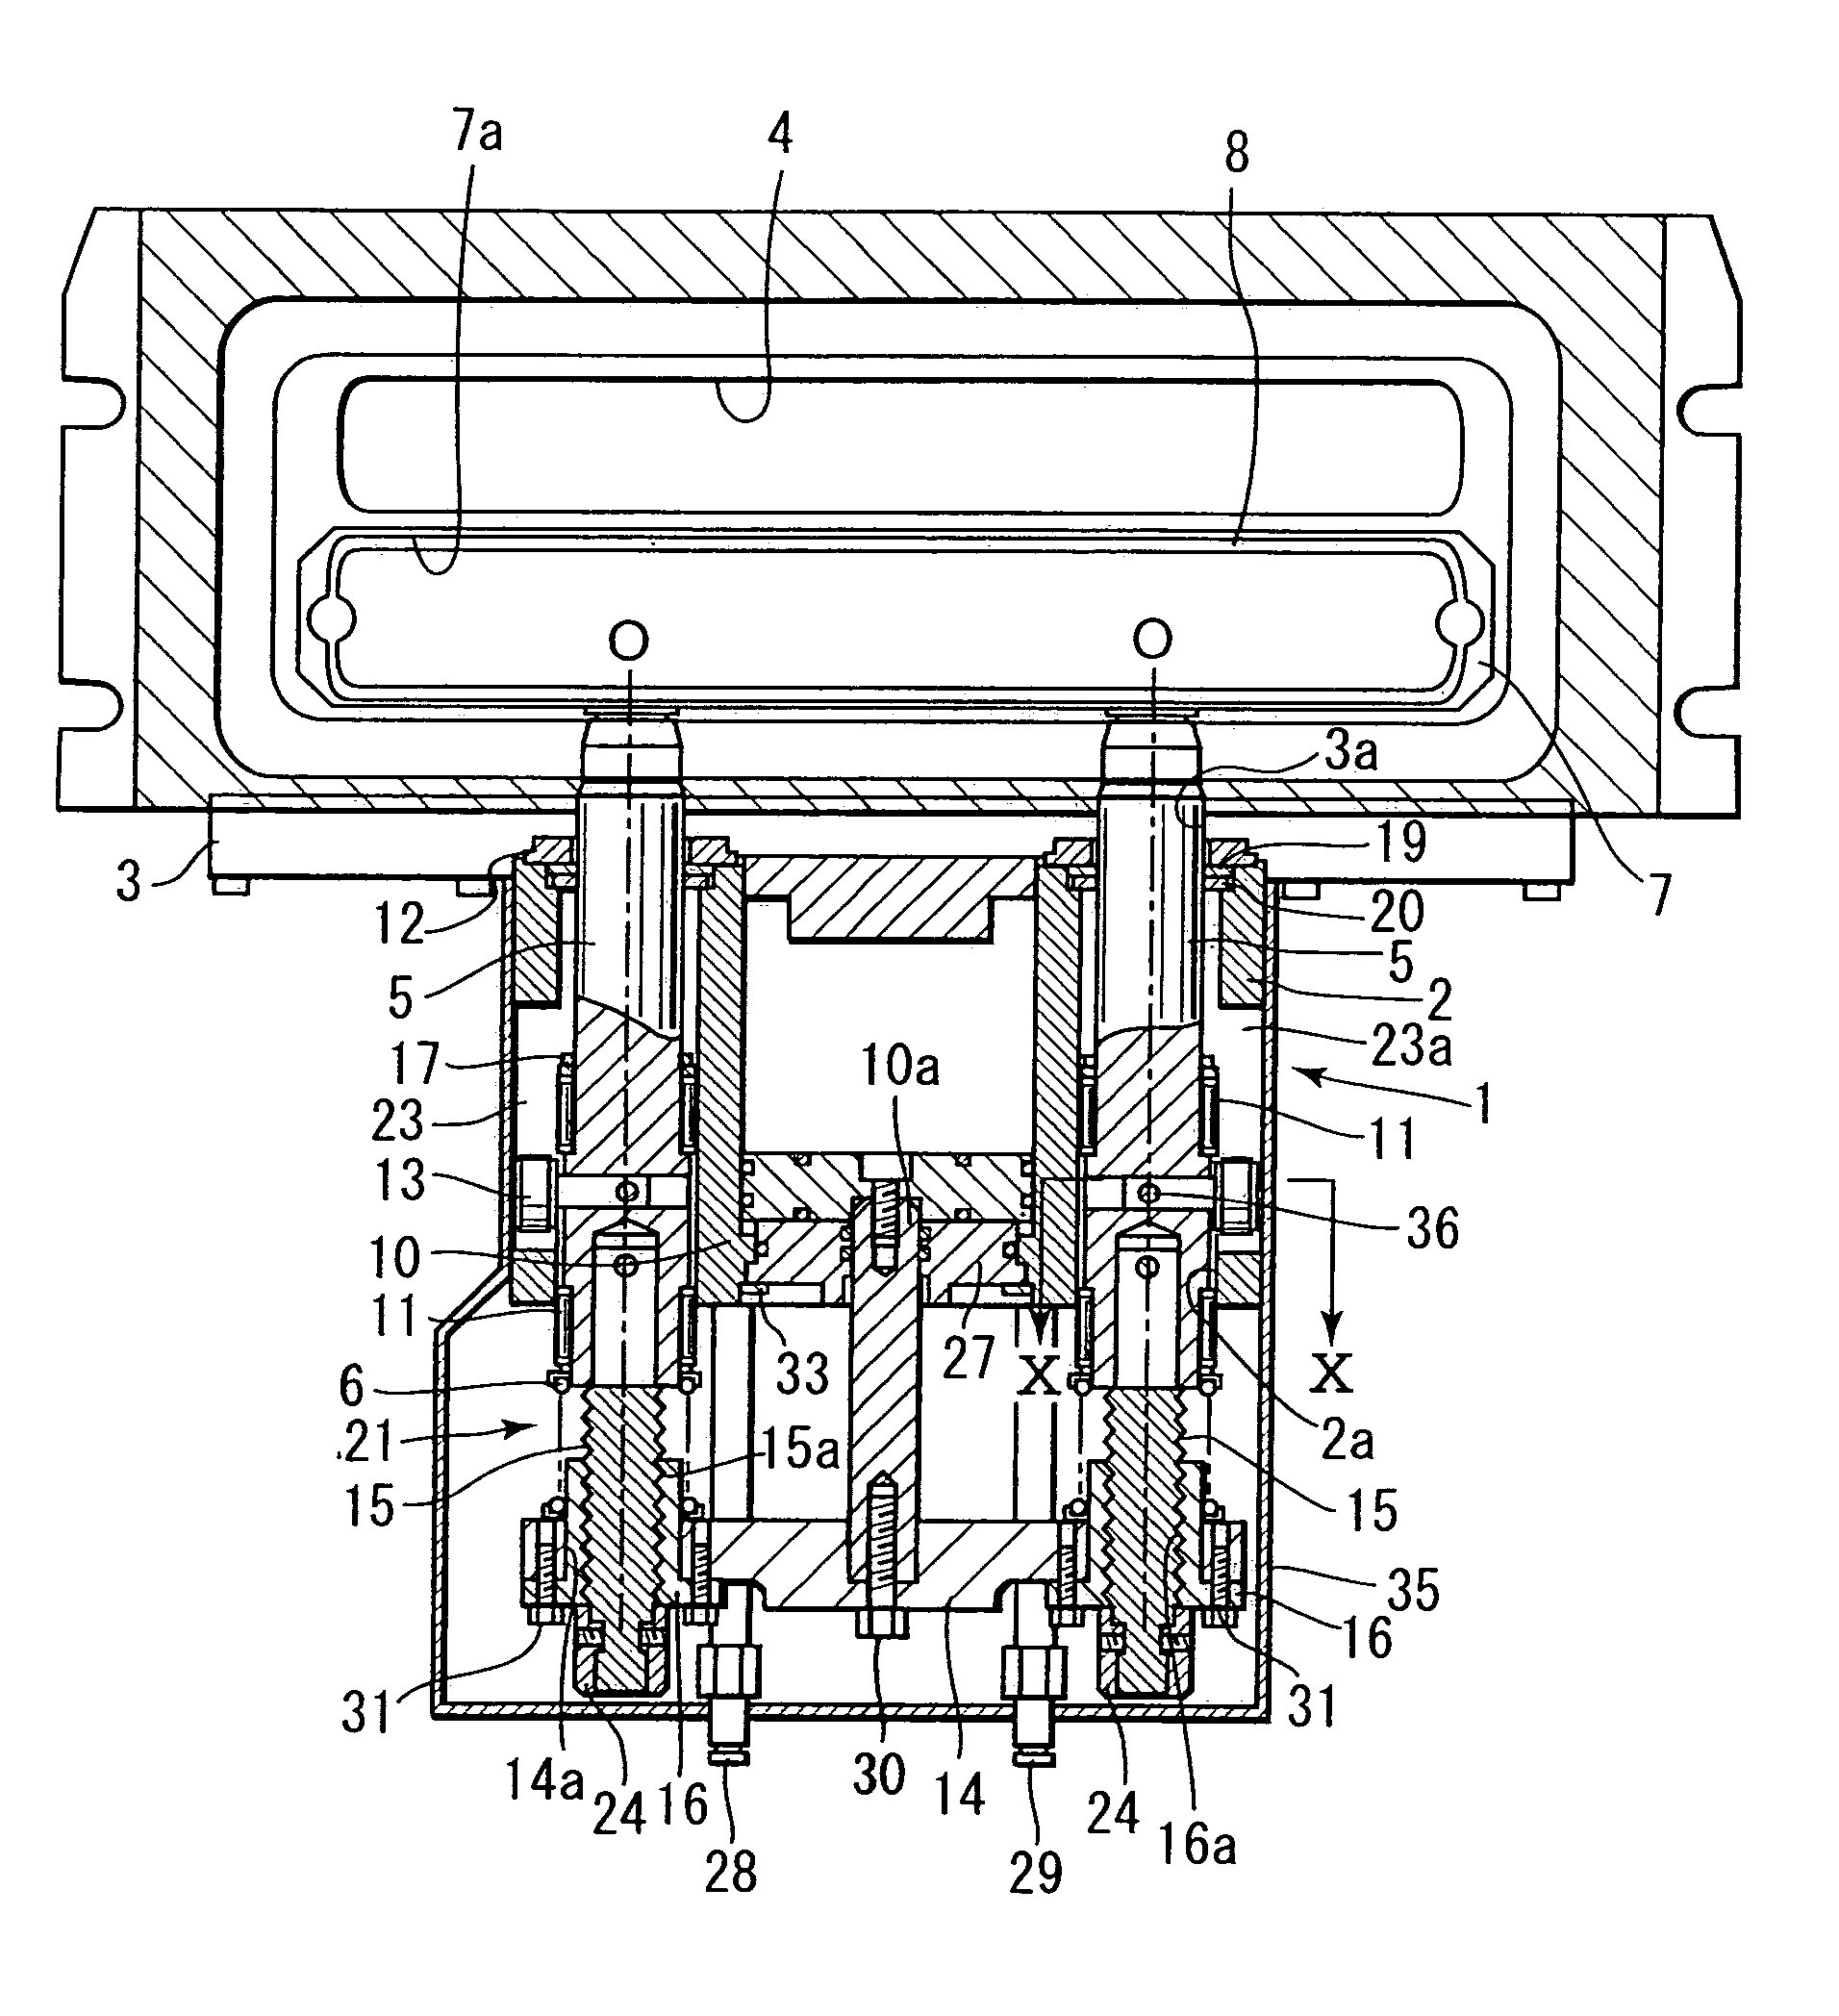 Non-rubbing gate valve for semiconductor fabrication apparatus